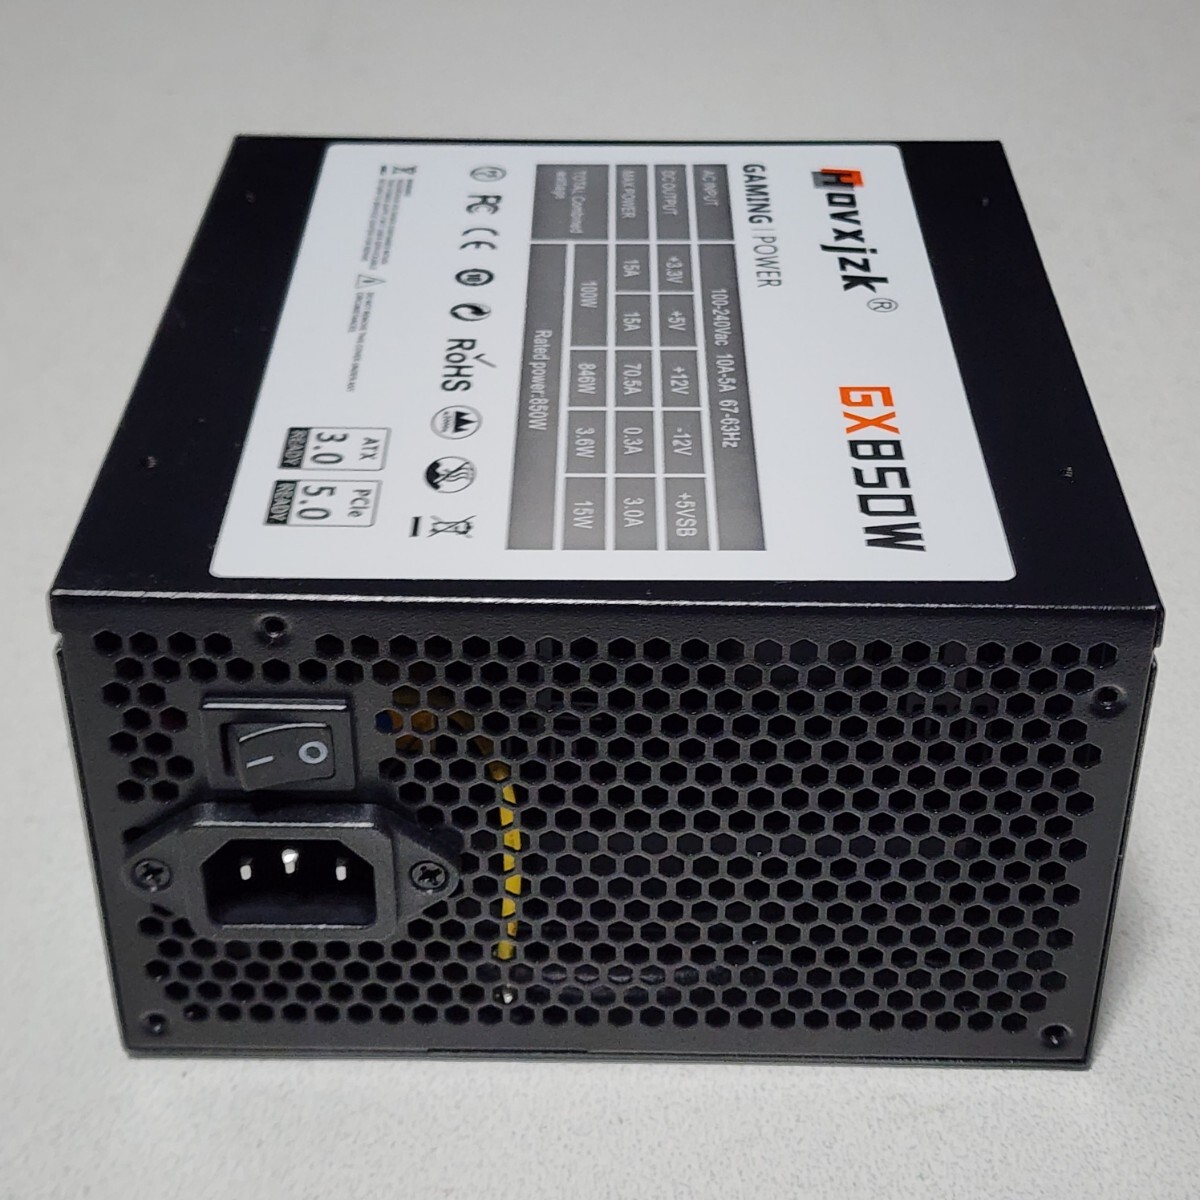 Hovxjzk GX-850W 850W 80PLUS GOLD認証 ATX電源ユニット フルプラグイン 動作確認済み PCパーツ